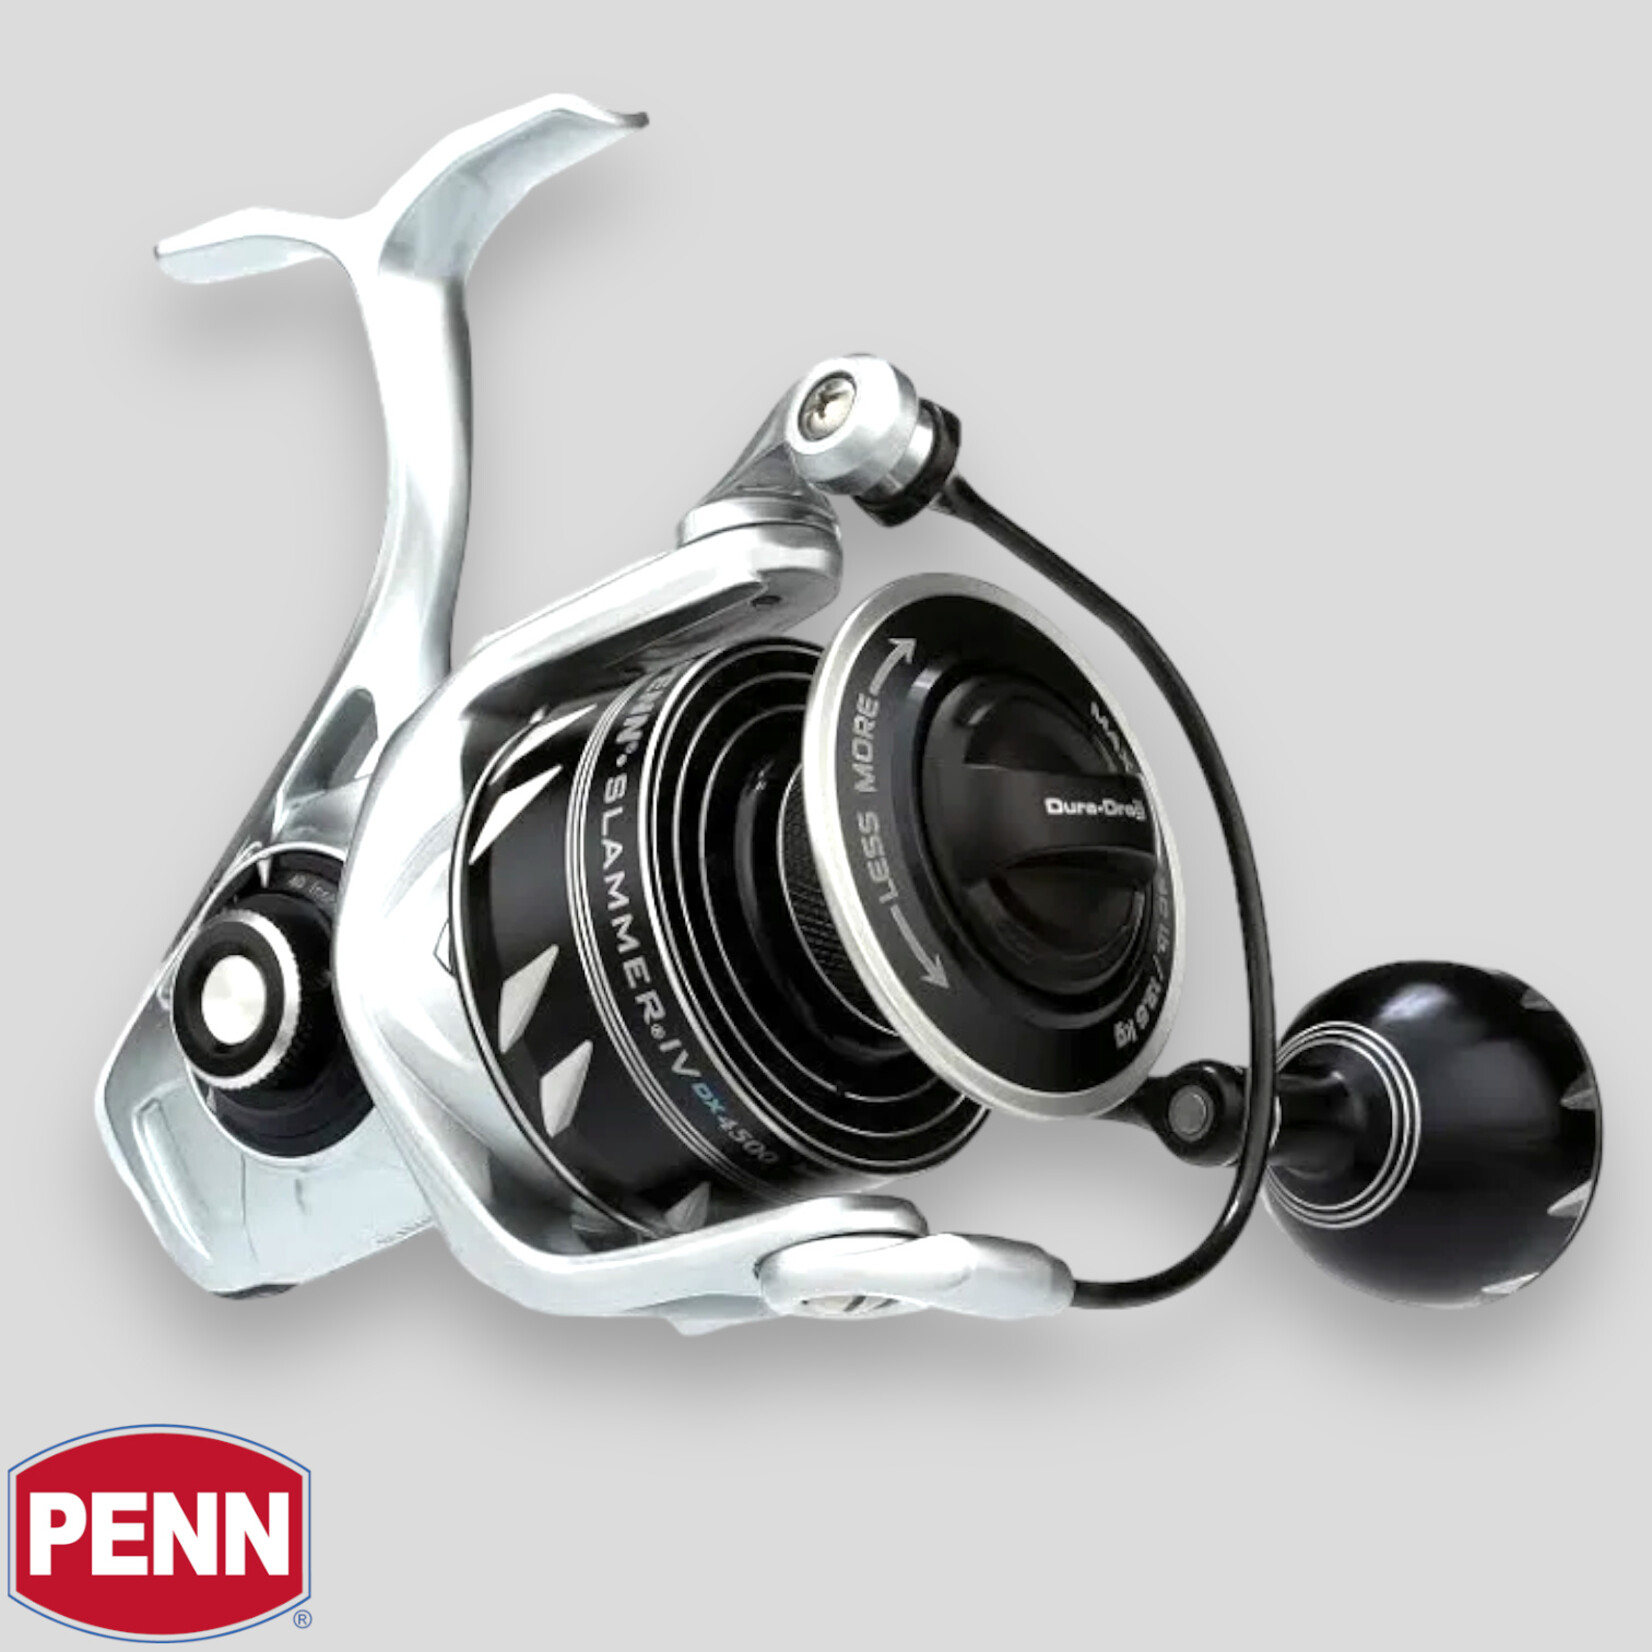 Penn Penn Slammer IV DX Spinning Reel